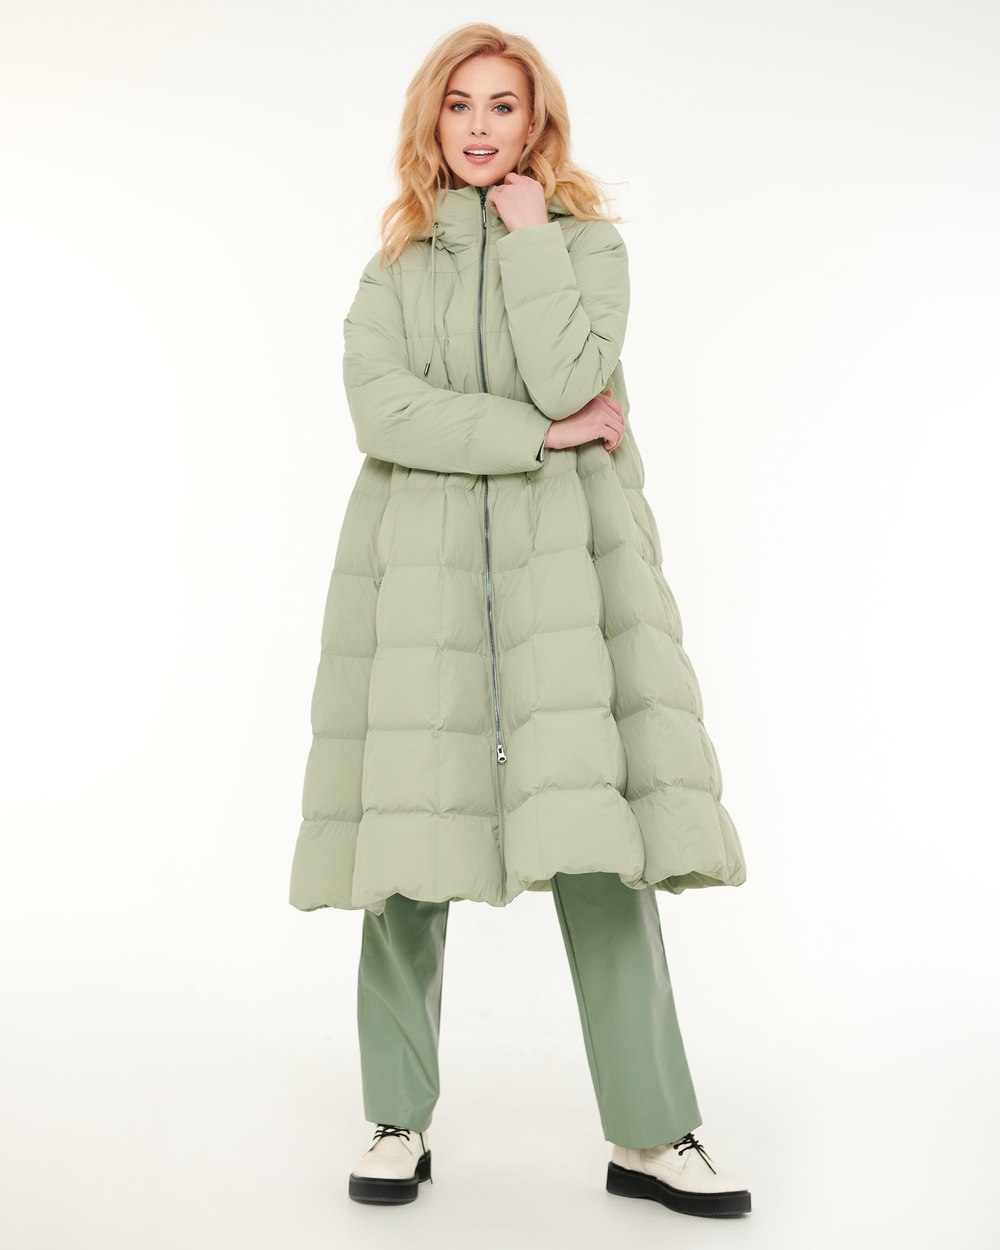 179.W22.004 пальто женское зеленое